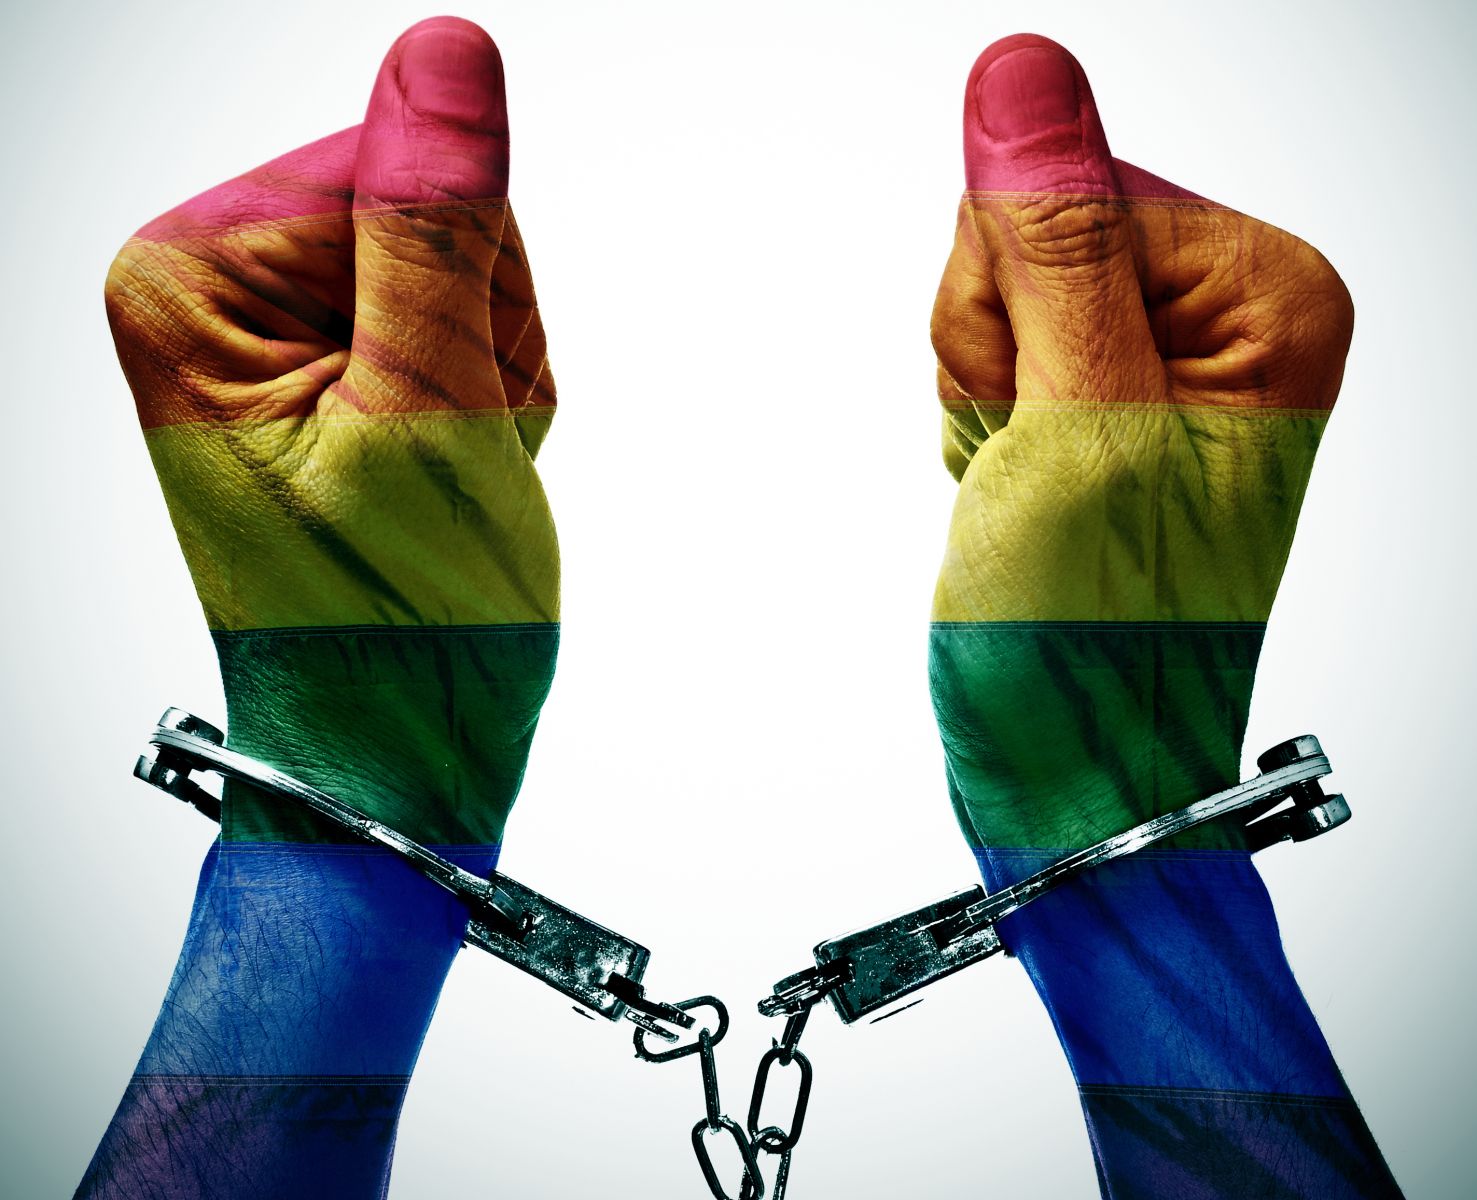 Gobierno de Canadá pide perdón por persecución a los homosexuales